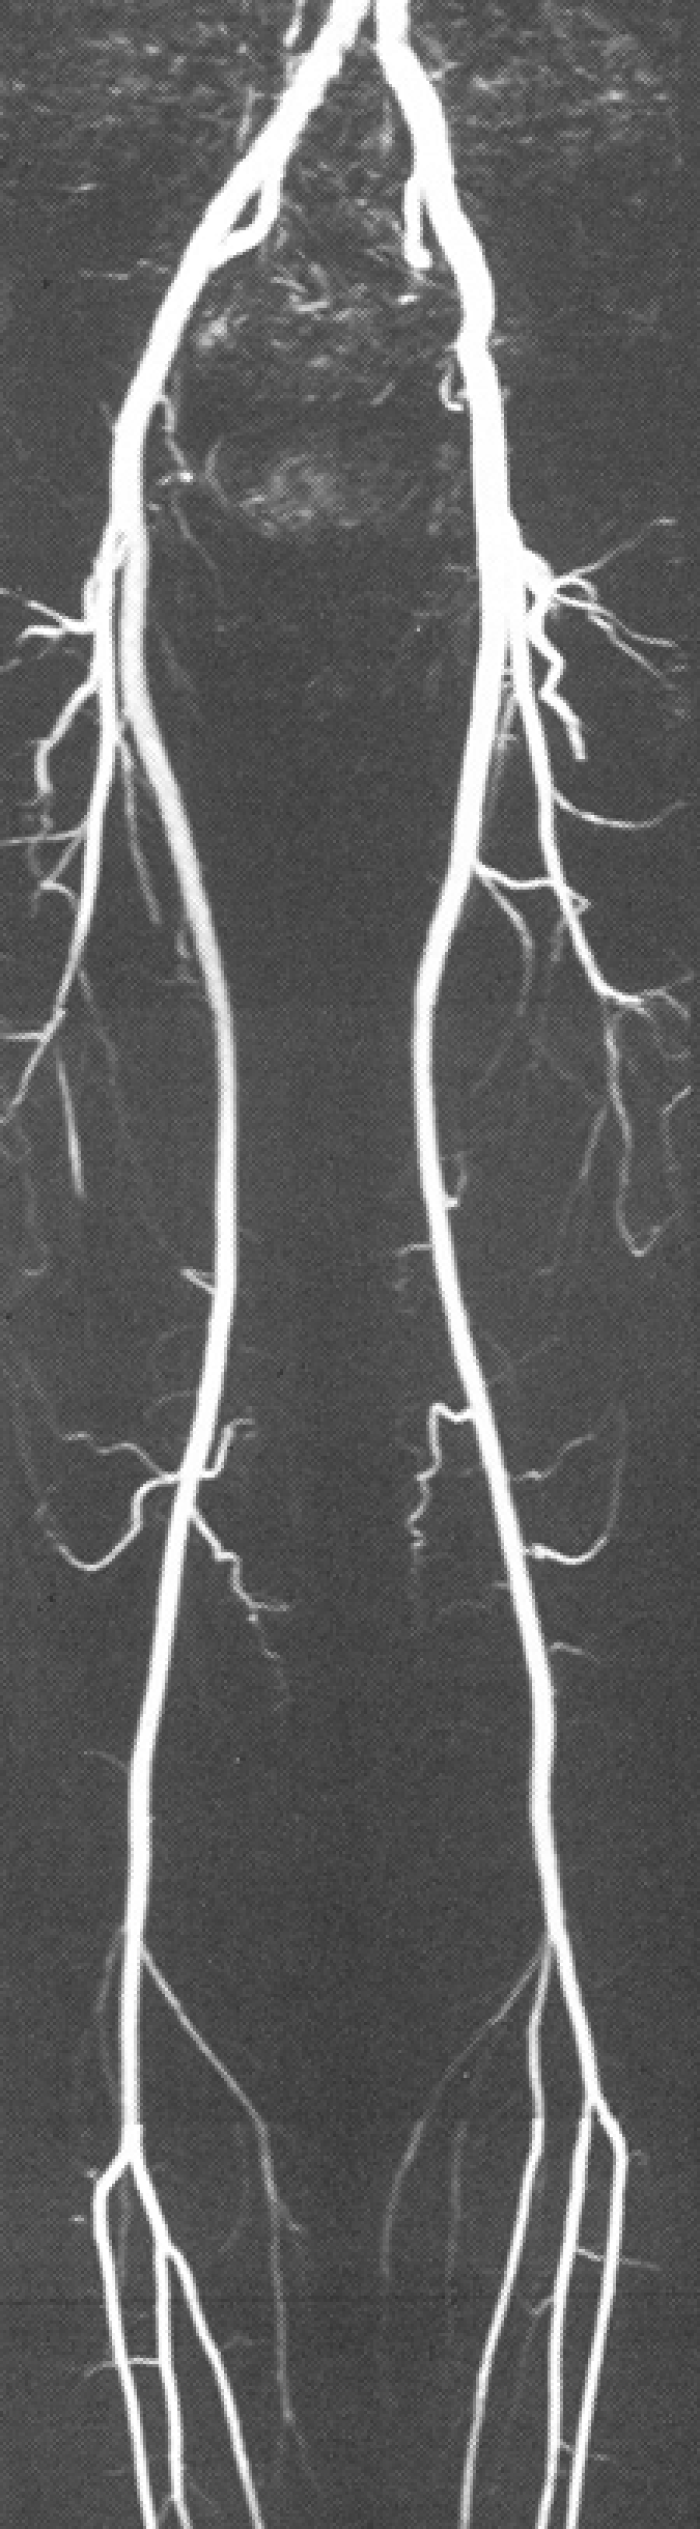 Röntgenbeeld van bloedvaten door middel van angriografie. 